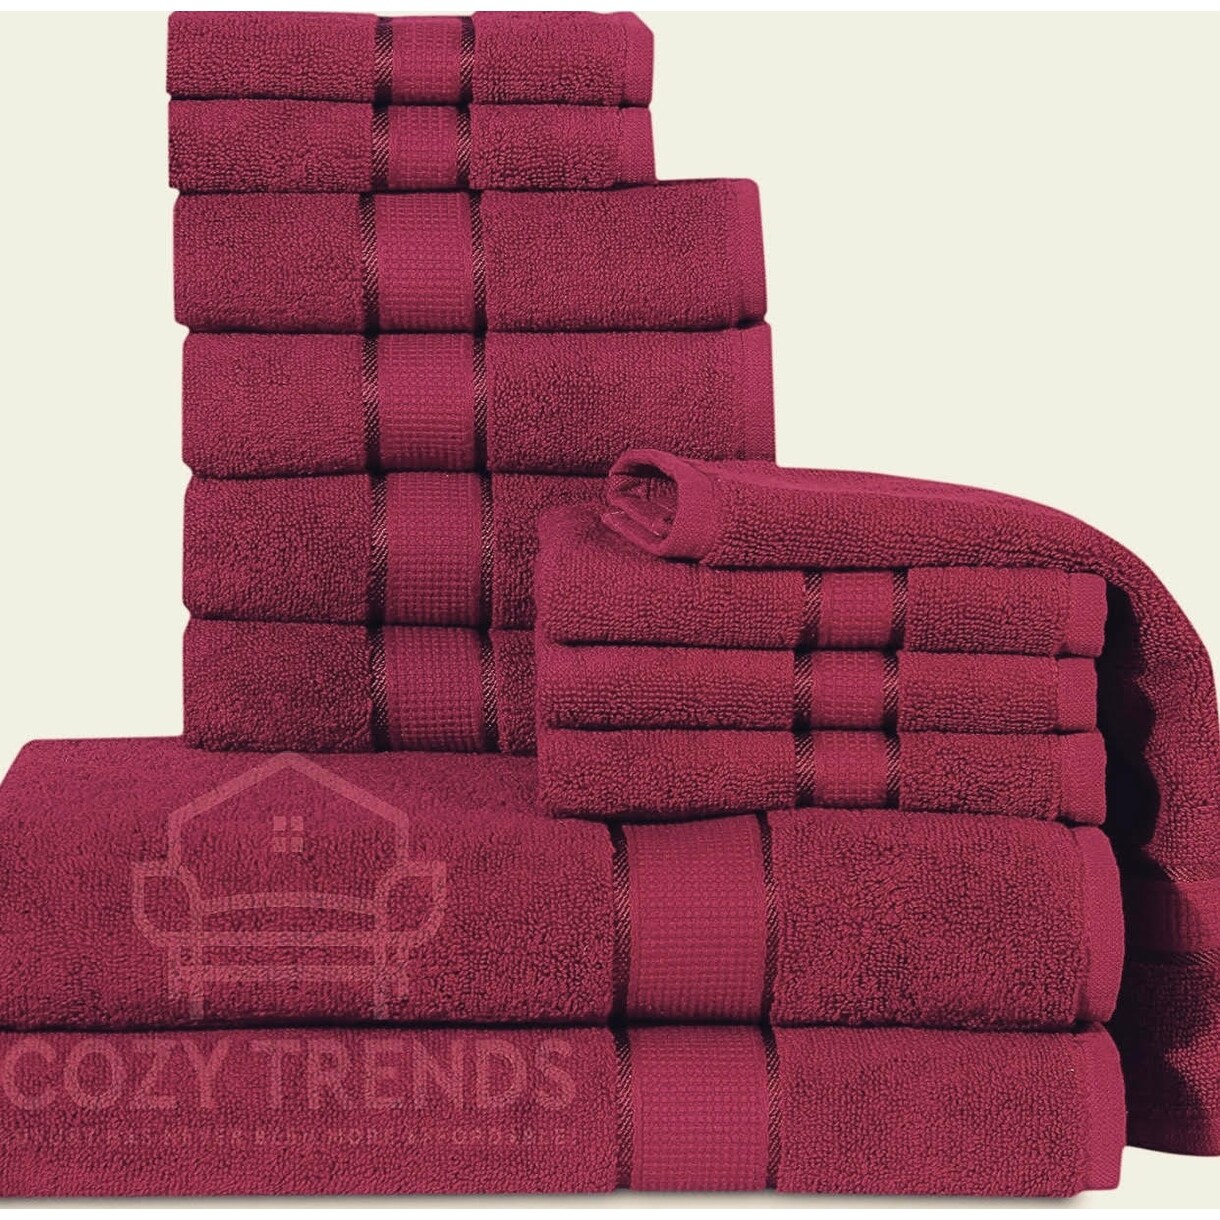 Details about   12 Piece Towel Set 600 GSM Long-Staple Combed Cotton Absorbent Bath Towels 